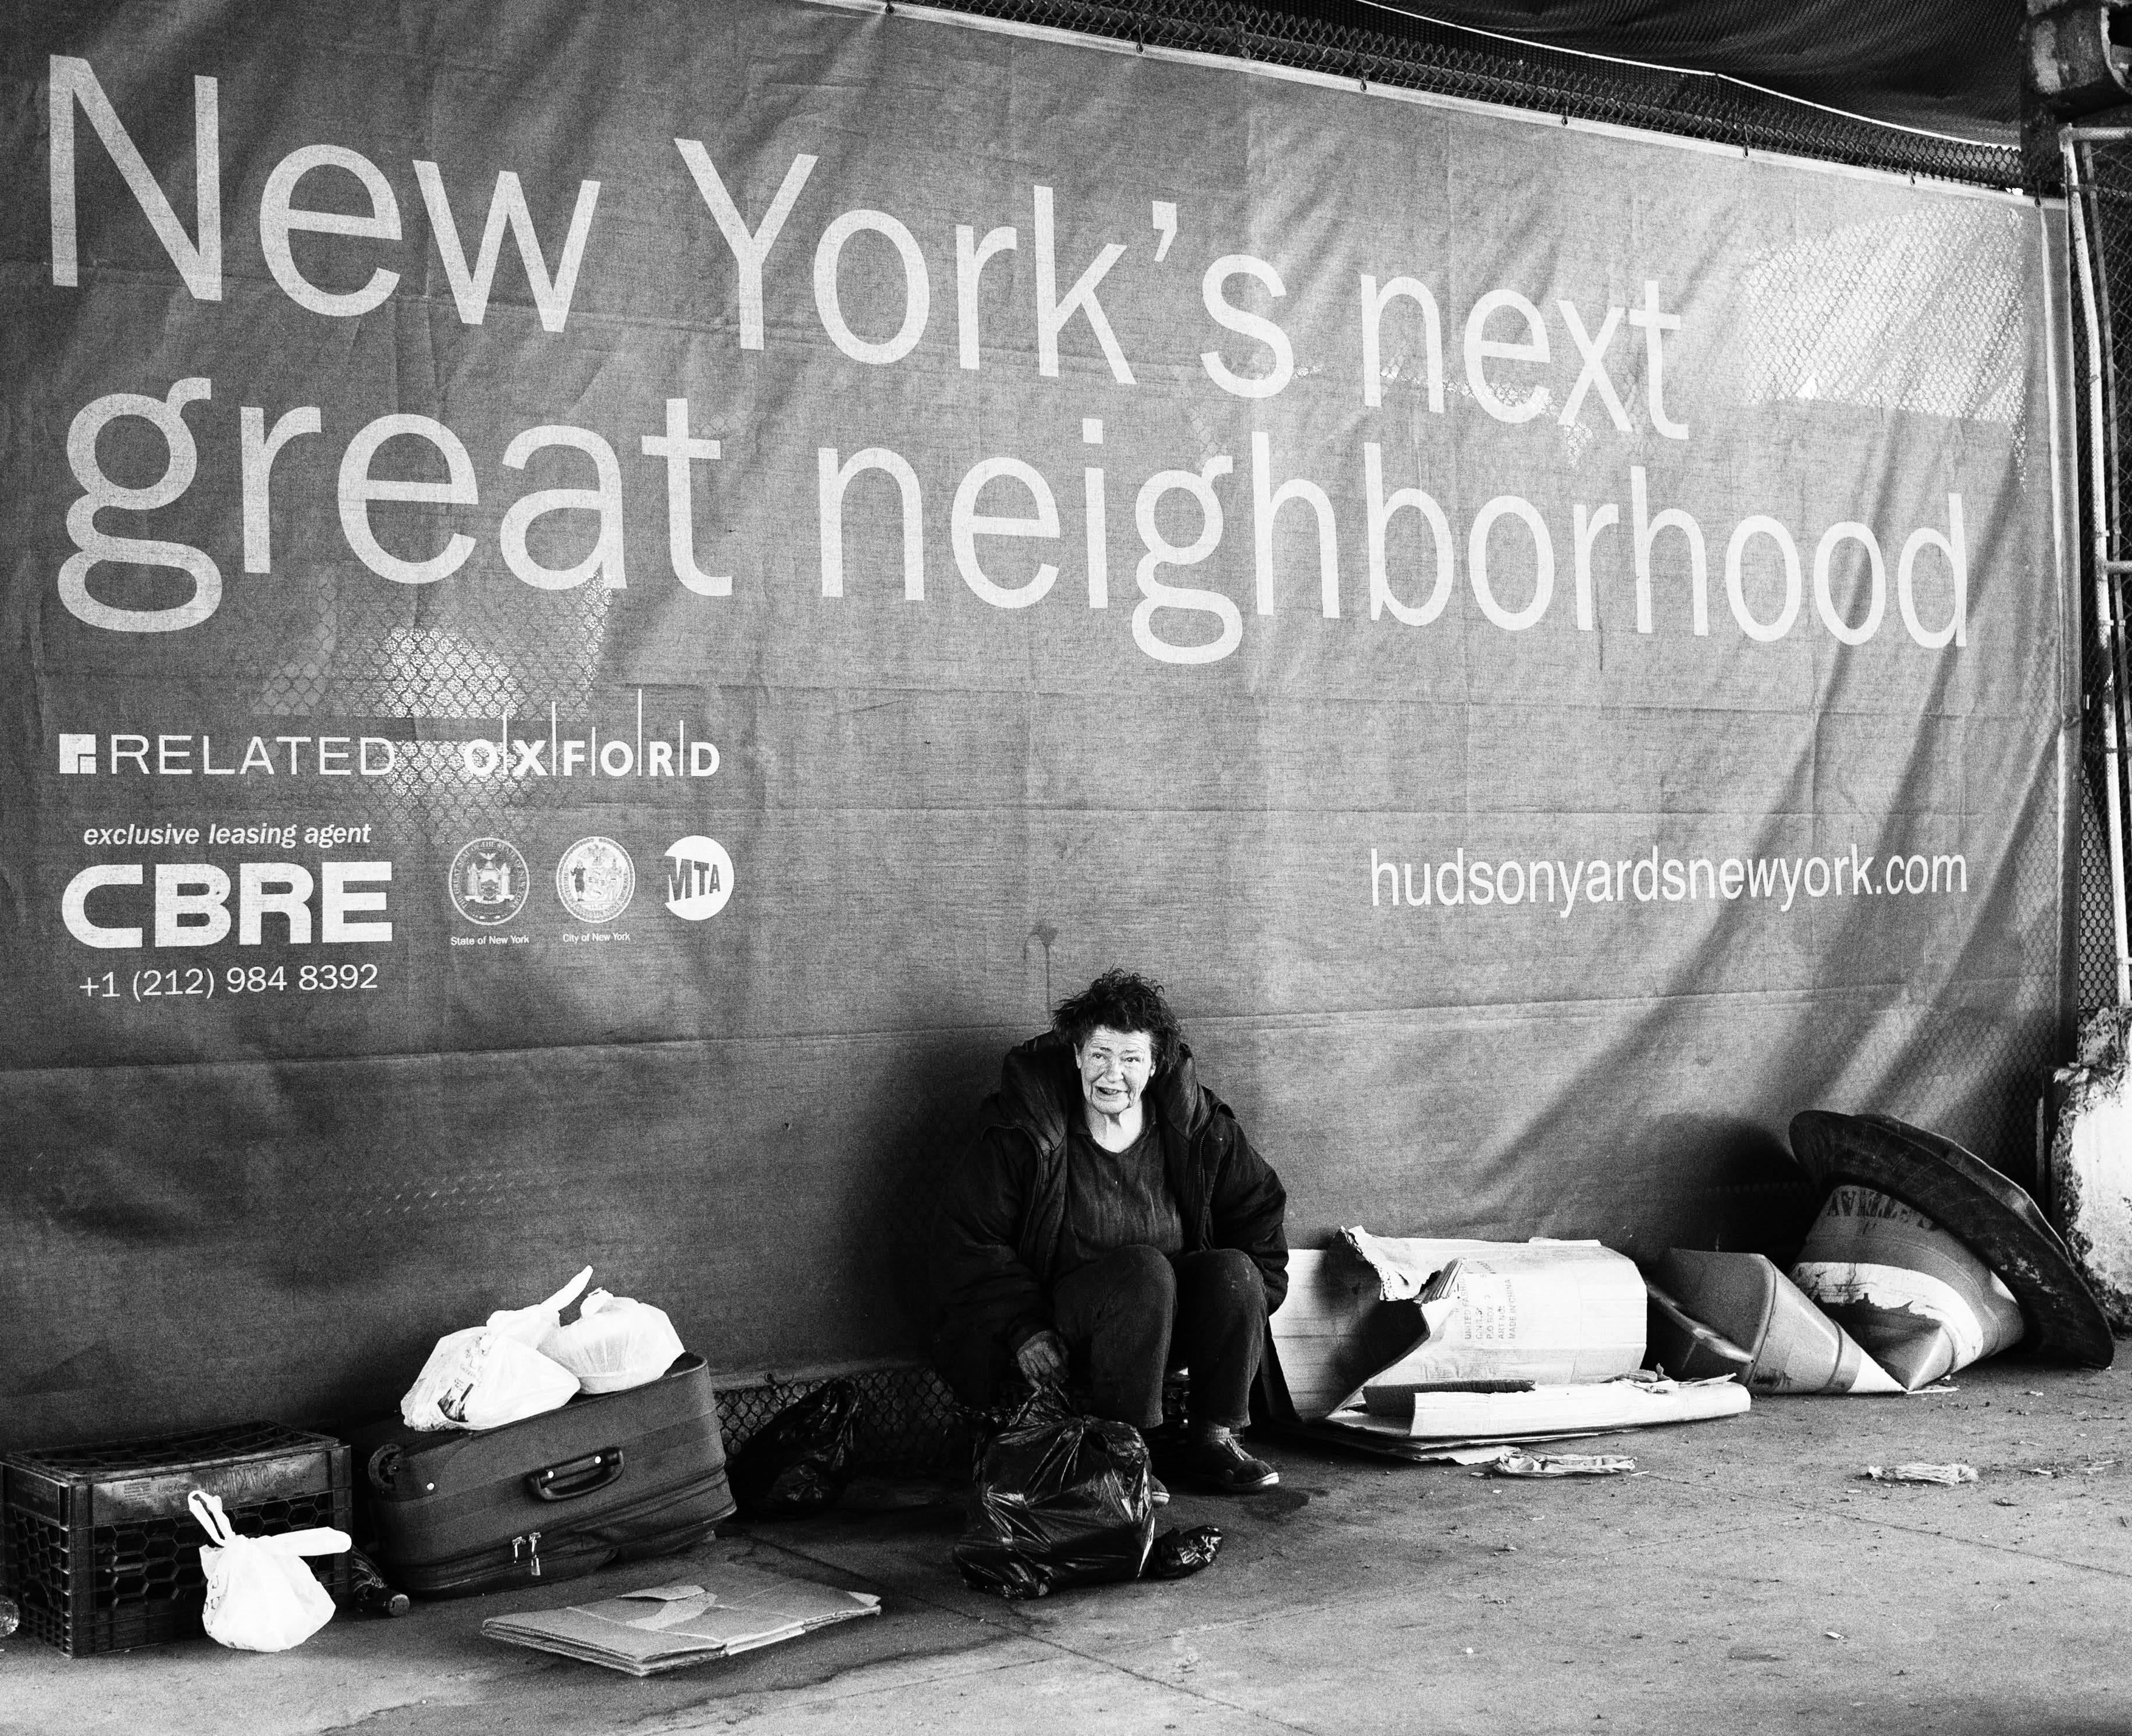 Gentrifizierung
New York, 2015

Dieses Bild, das einmal mehr die Fragen der sozialen Gerechtigkeit und der wirtschaftlichen Ungleichheit hervorhebt, erzählt buchstäblich seine eigene Geschichte. Die unglückliche Ironie, die Whitford eingefangen hat,